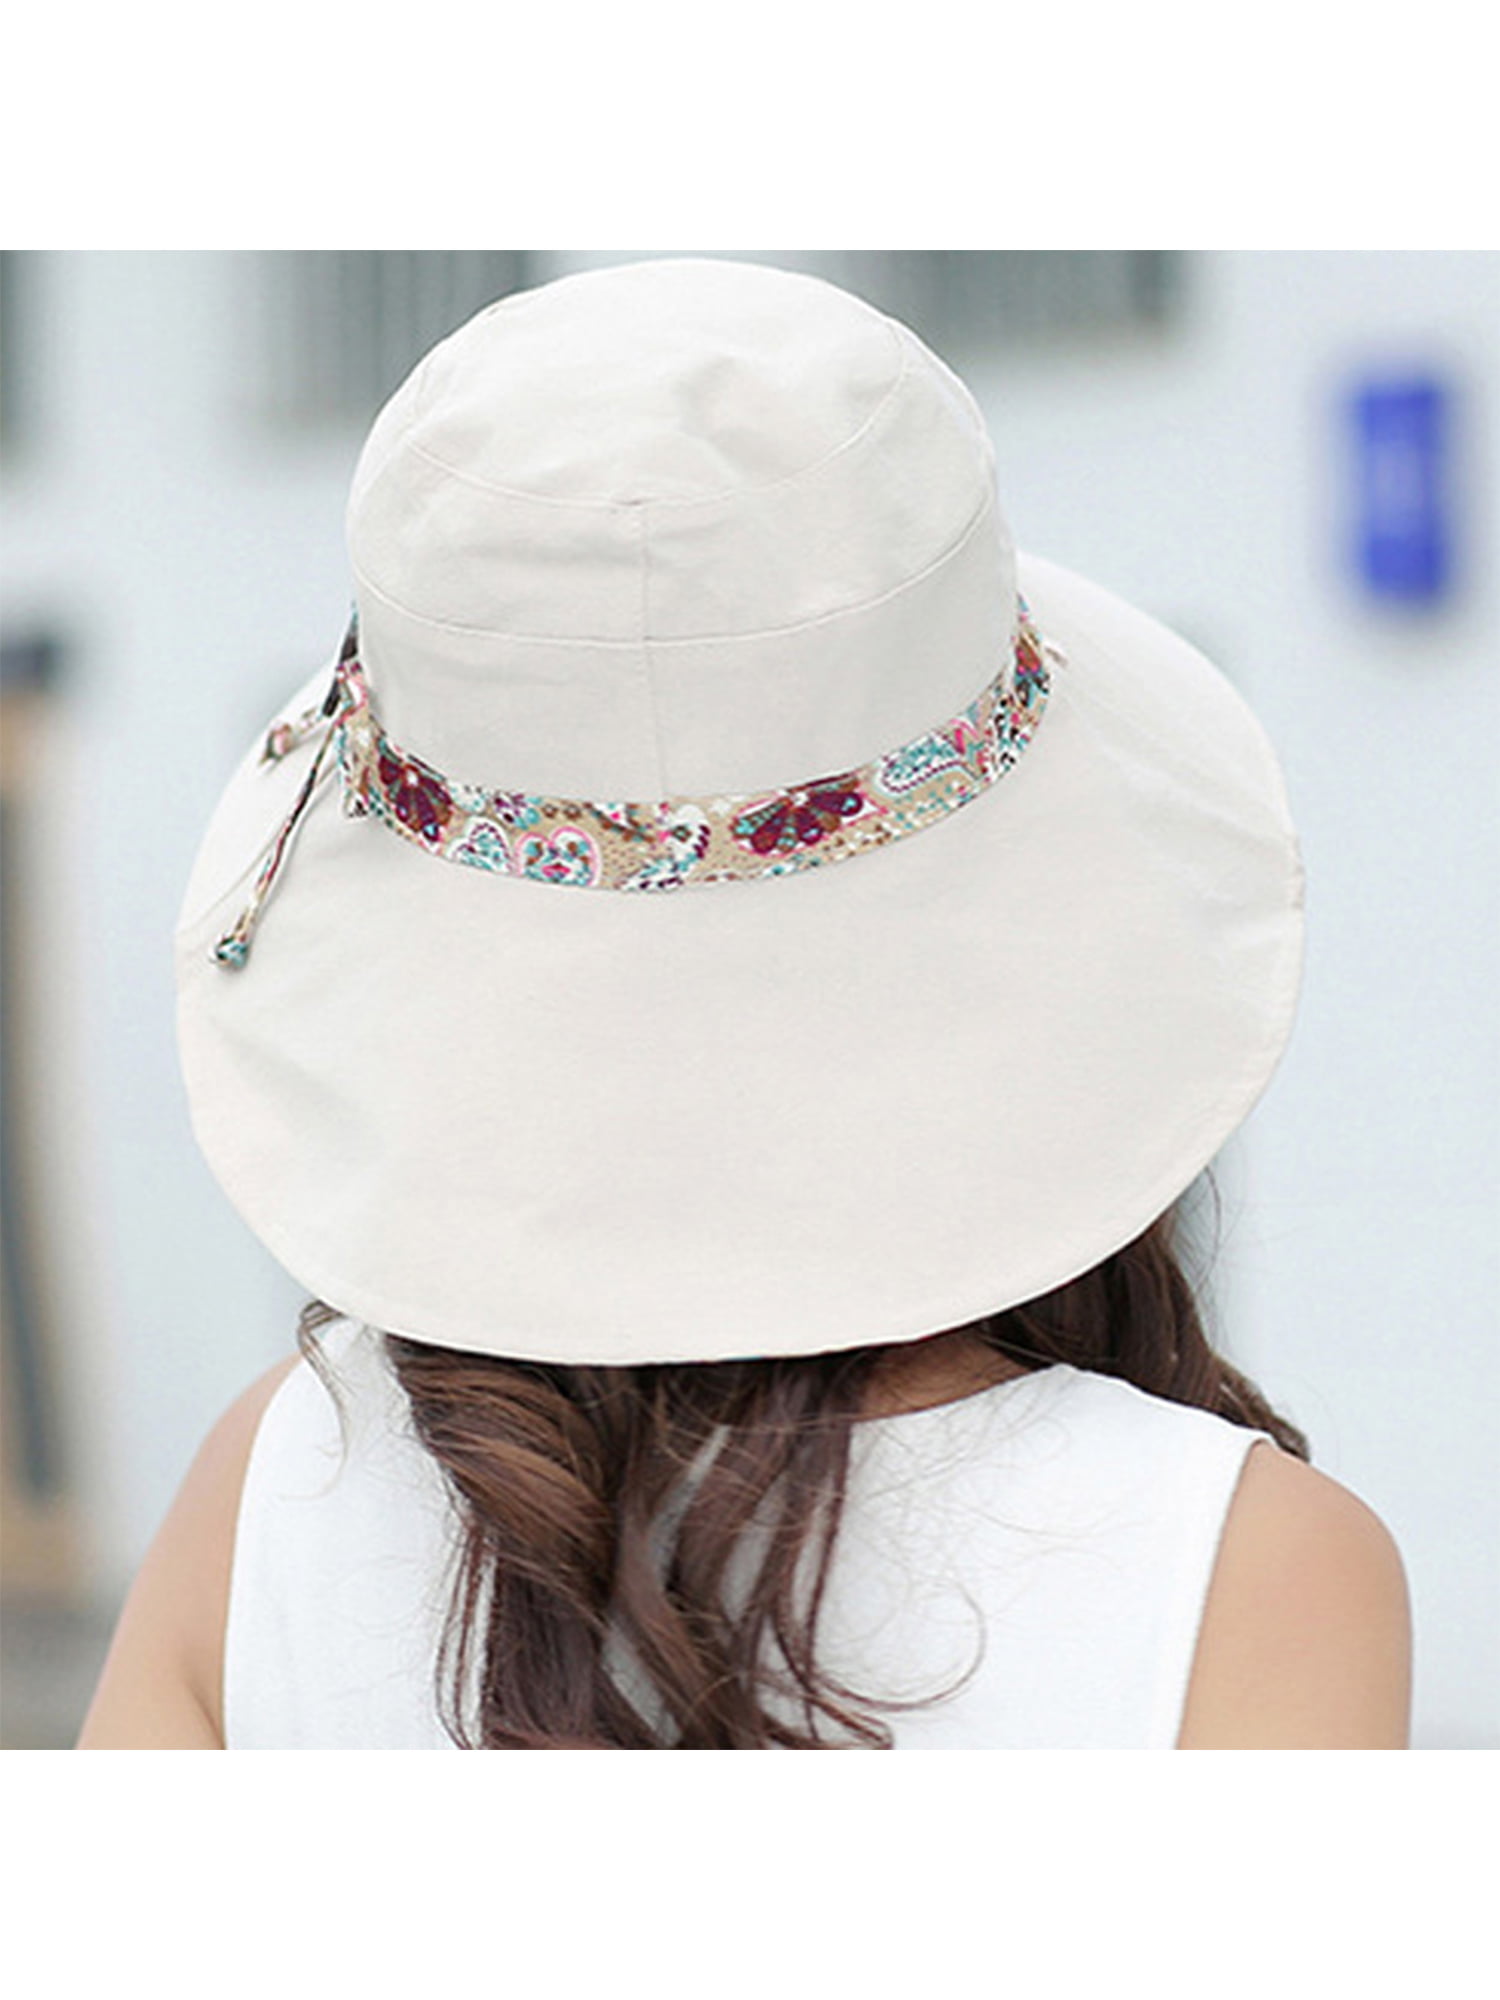 AUQ Women Summer Casual Big Wide Brim Cotton Hat Floppy Derby